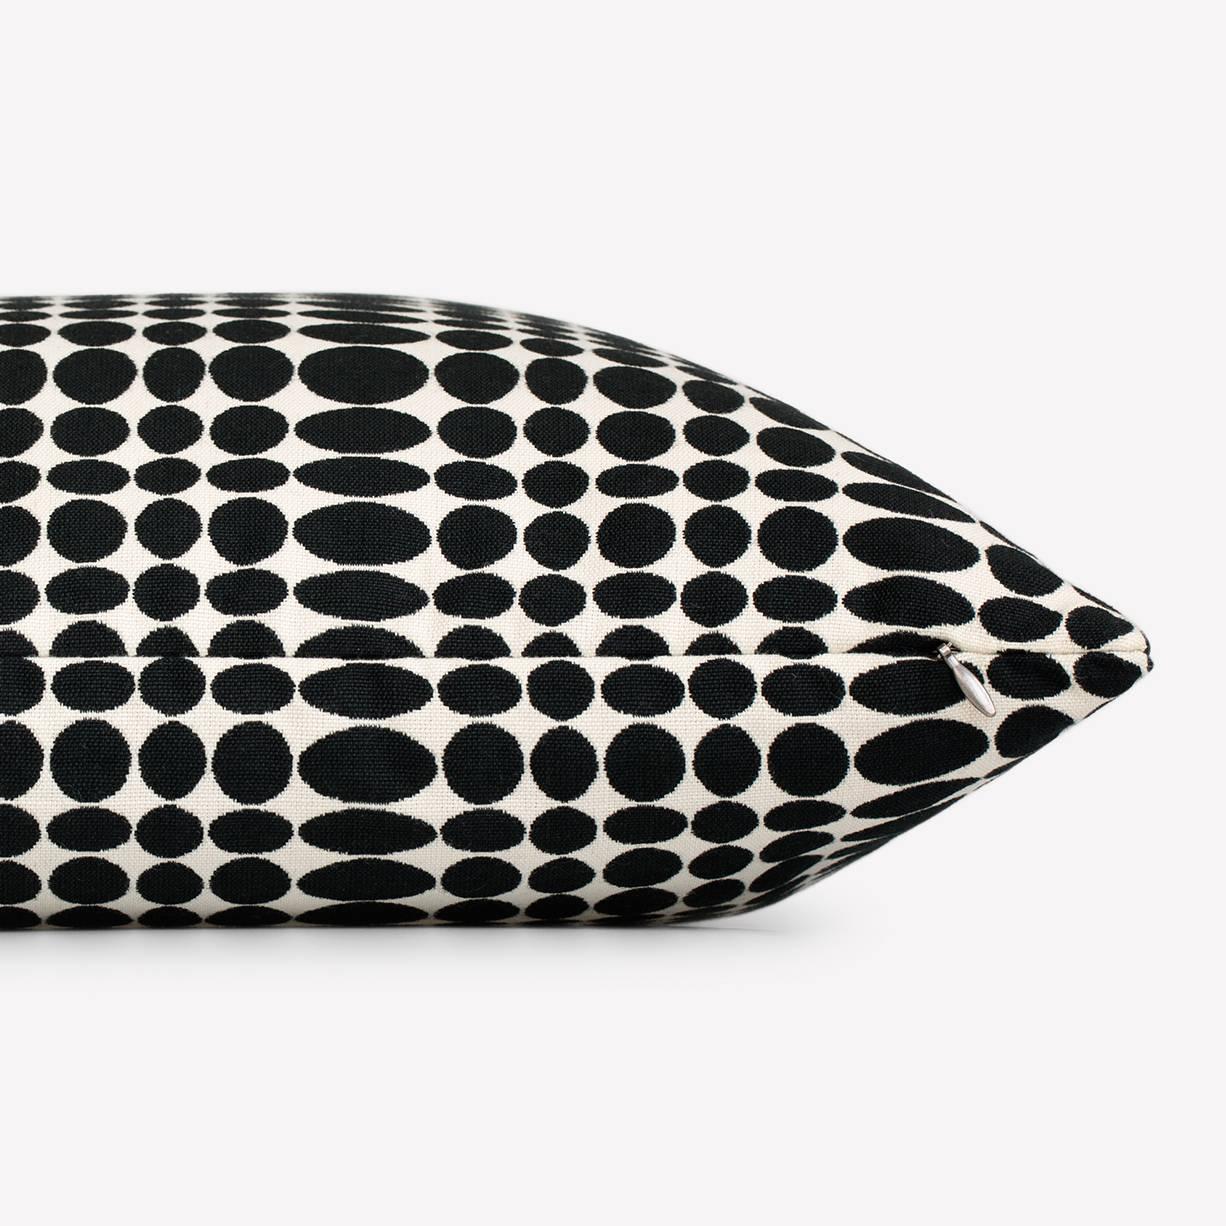 Oreiller Maharam
Unisol de Verner Panton
001 noir/blanc

Créé par Verner Panton en 1965, Unisol est un motif graphique composé de rangées d'ellipses noires sur un rond blanc. Les ellipses sont comprimées en largeur à des intervalles rythmiques,